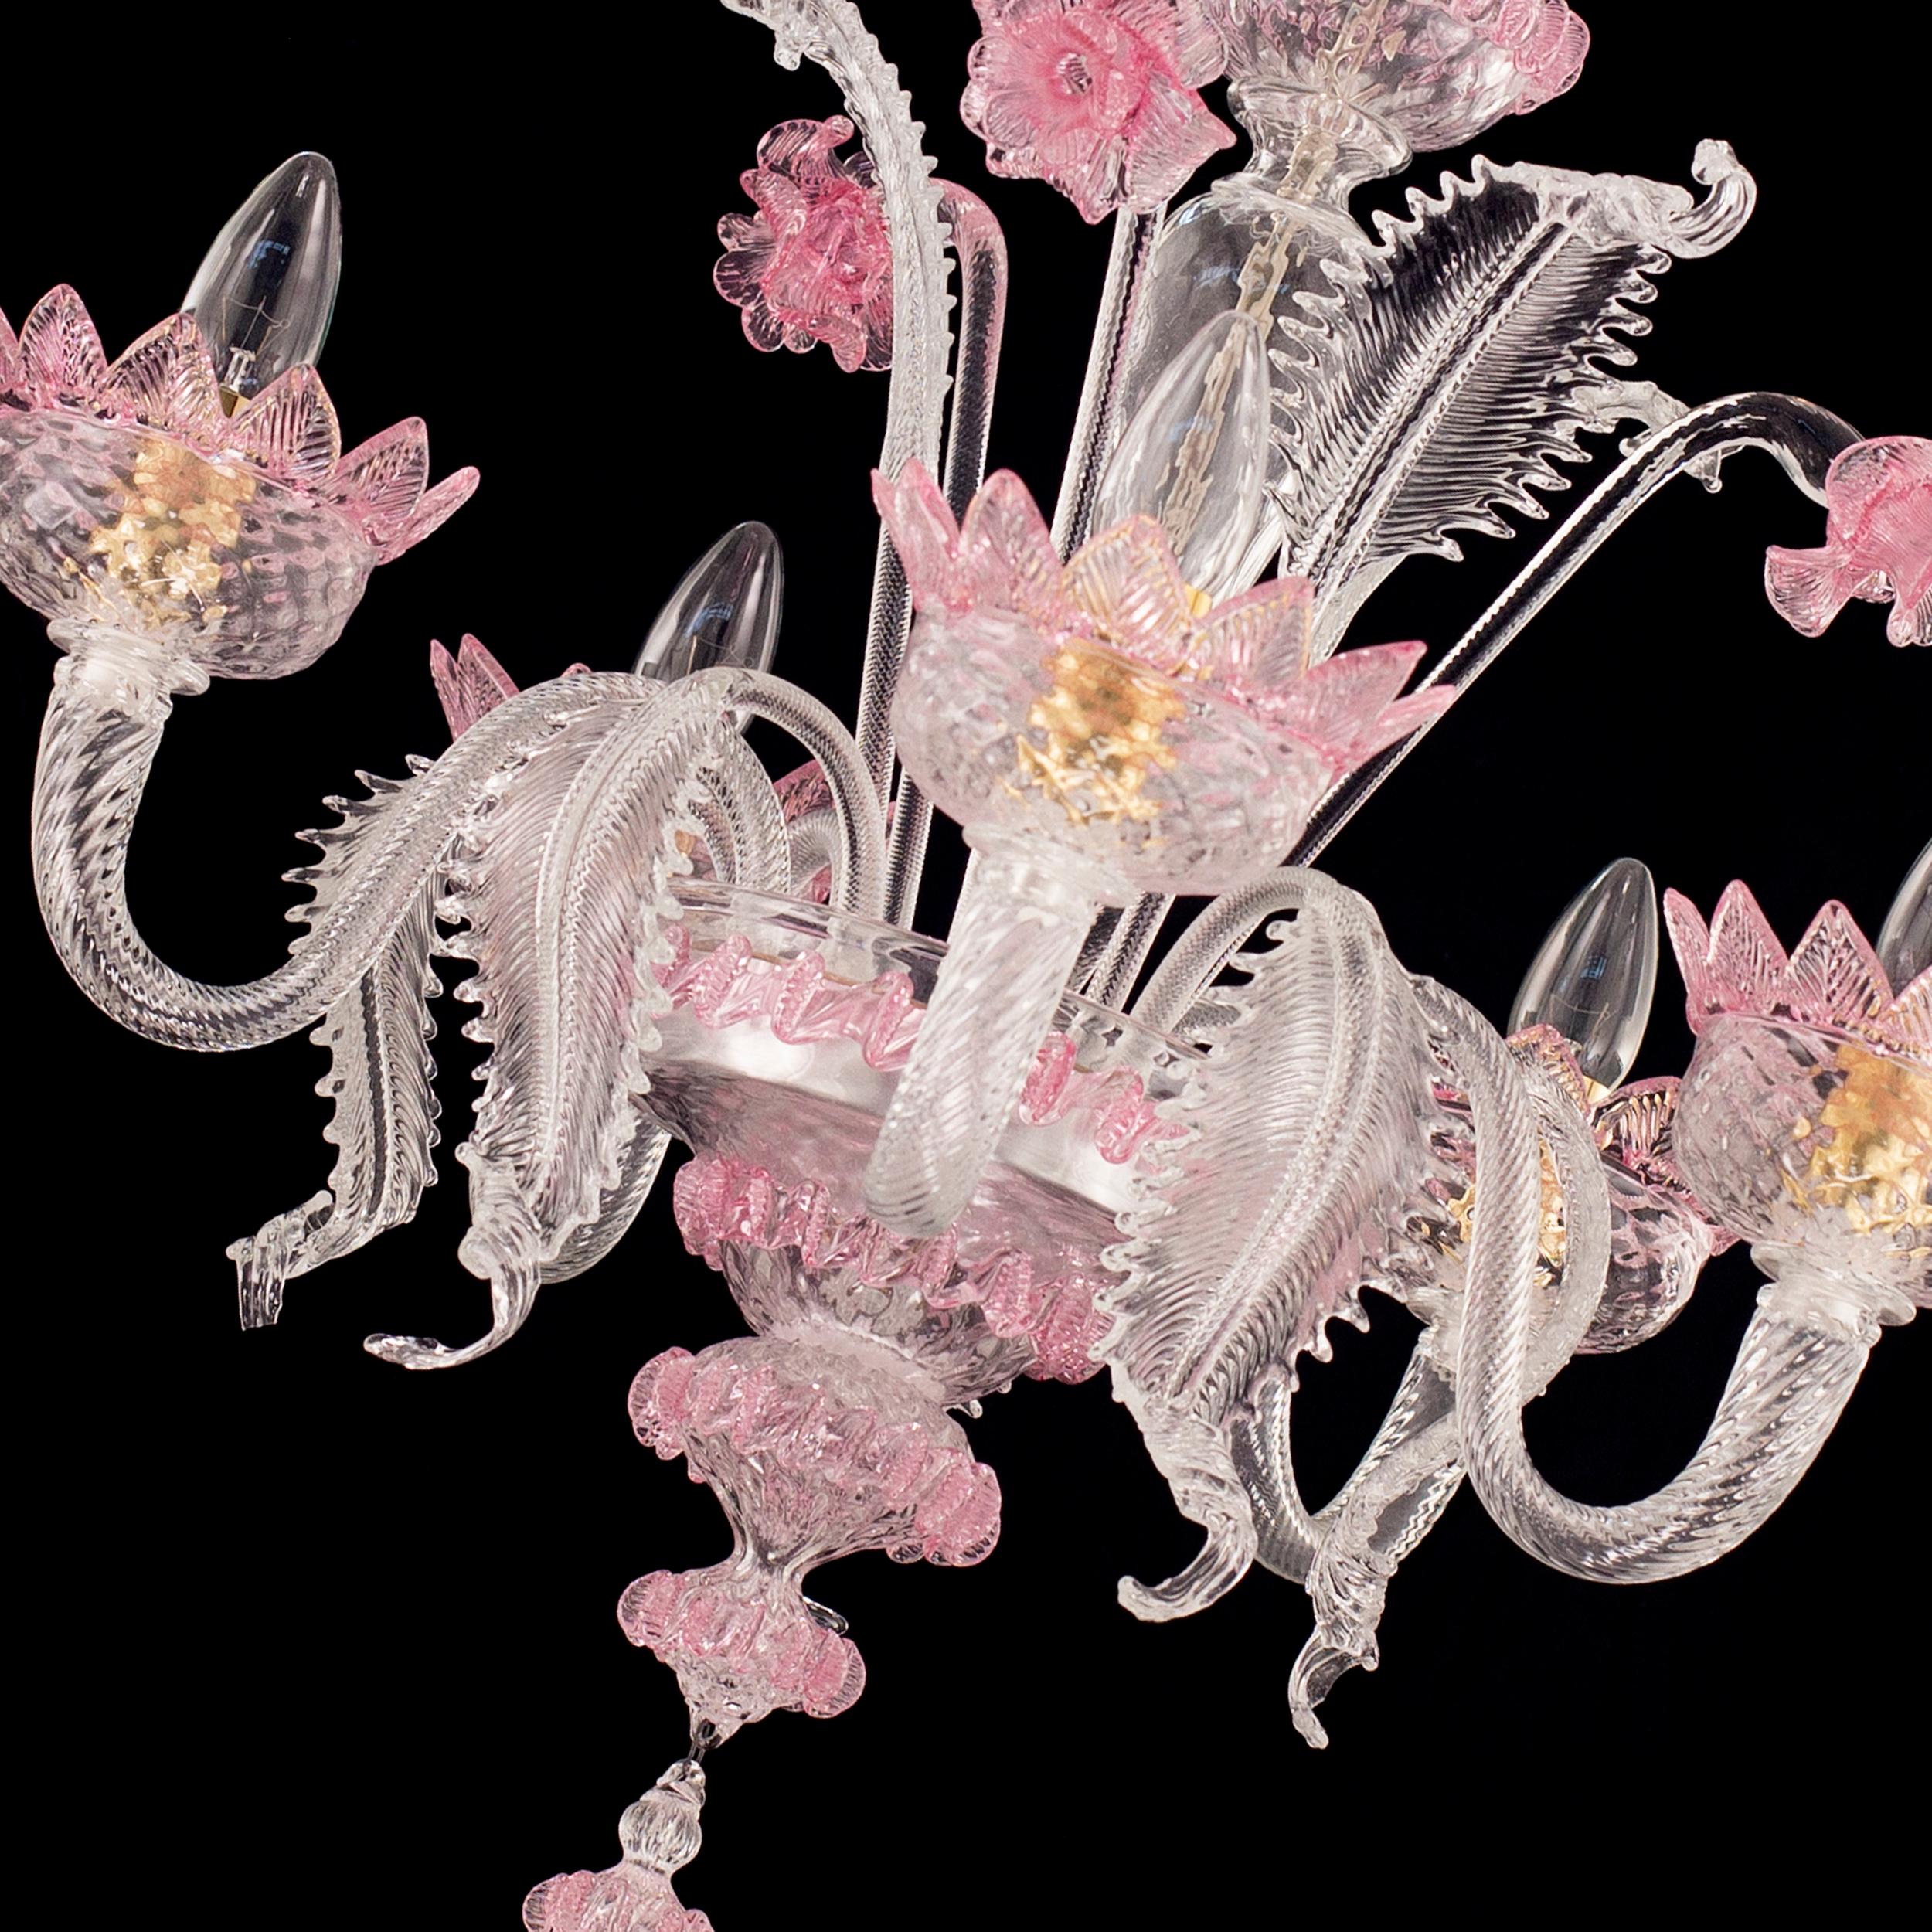 Klassischer 5-armiger Kronleuchter aus klarem und rosa Murano Glas von Multiforme.
Der klassische Murano-Glaslüster, wie er in der kollektiven Vorstellung ist. Wie viele andere Kronleuchter aus unseren Kollektionen wurde auch V-Classic 800 mit viel